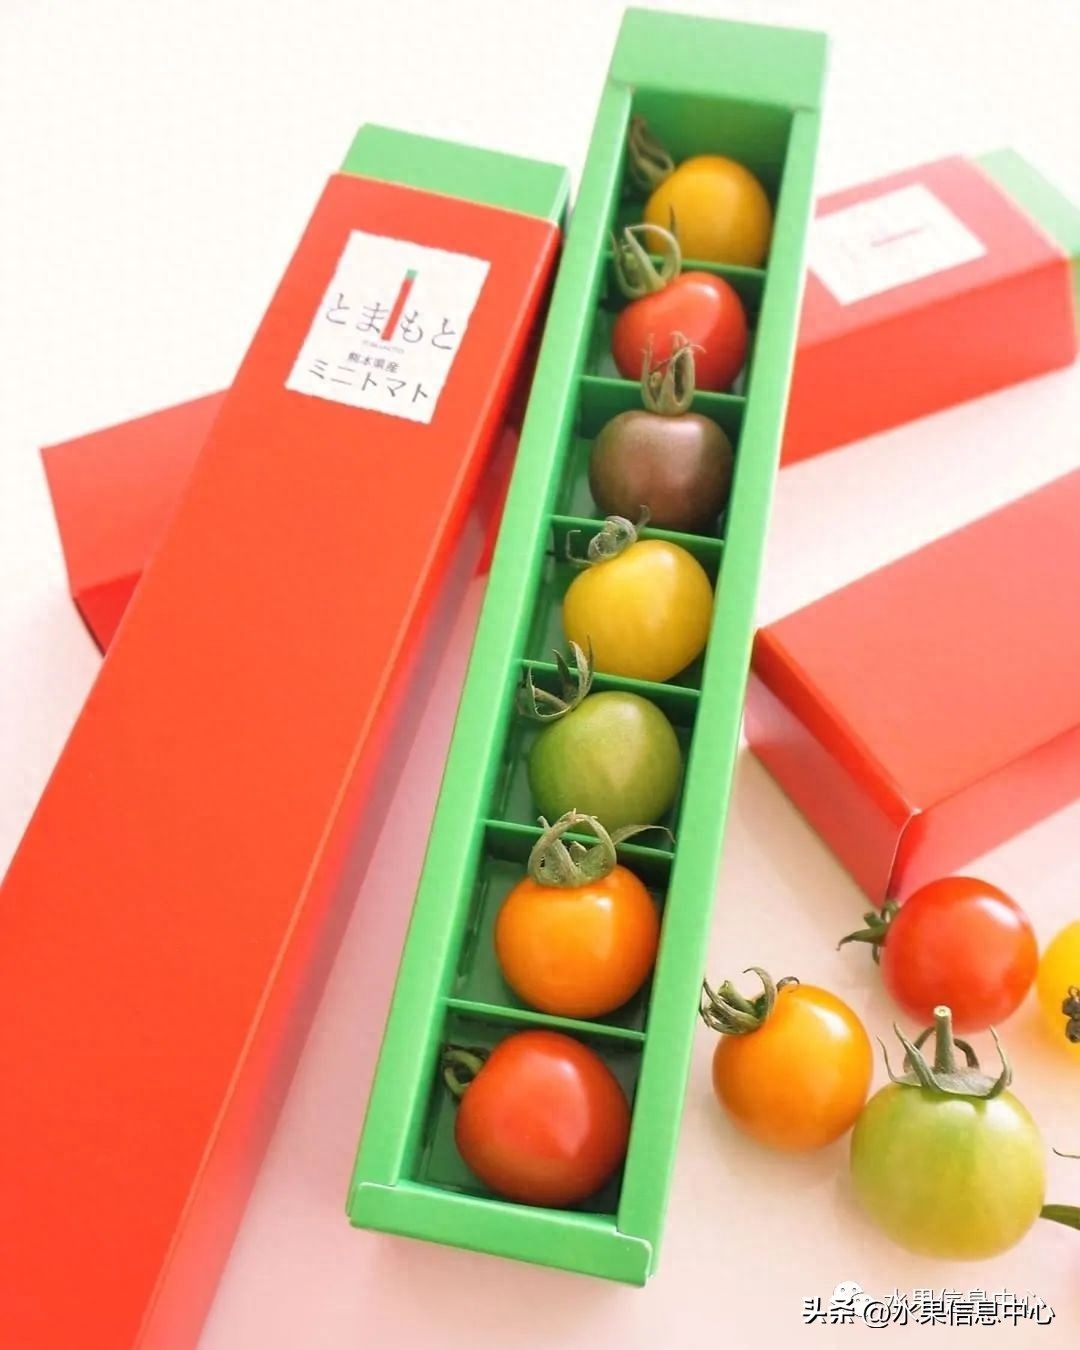 目前市场销售樱桃番茄大多都是圆形和椭圆形的，颜色以红色为主，少部分有黄色绿色等，品种也大多来源荷兰和中国台湾等。但是市场销售是以单色销售为主，比较少见多品种集合的